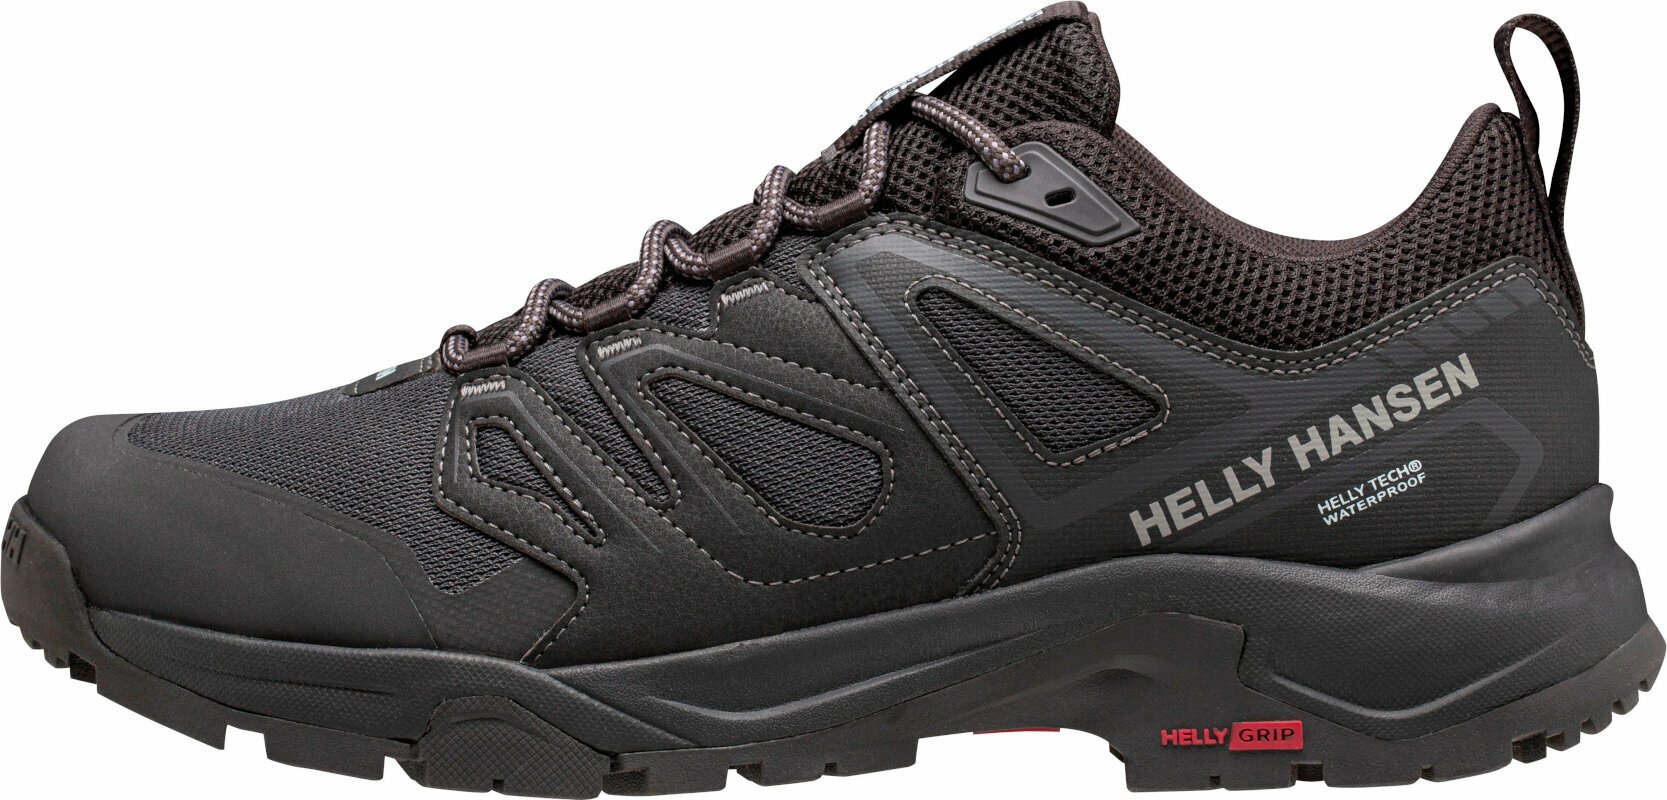 Ανδρικό Παπούτσι Ορειβασίας Helly Hansen Men's Stalheim HT Hiking Shoes Black/Red 45 Ανδρικό Παπούτσι Ορειβασίας